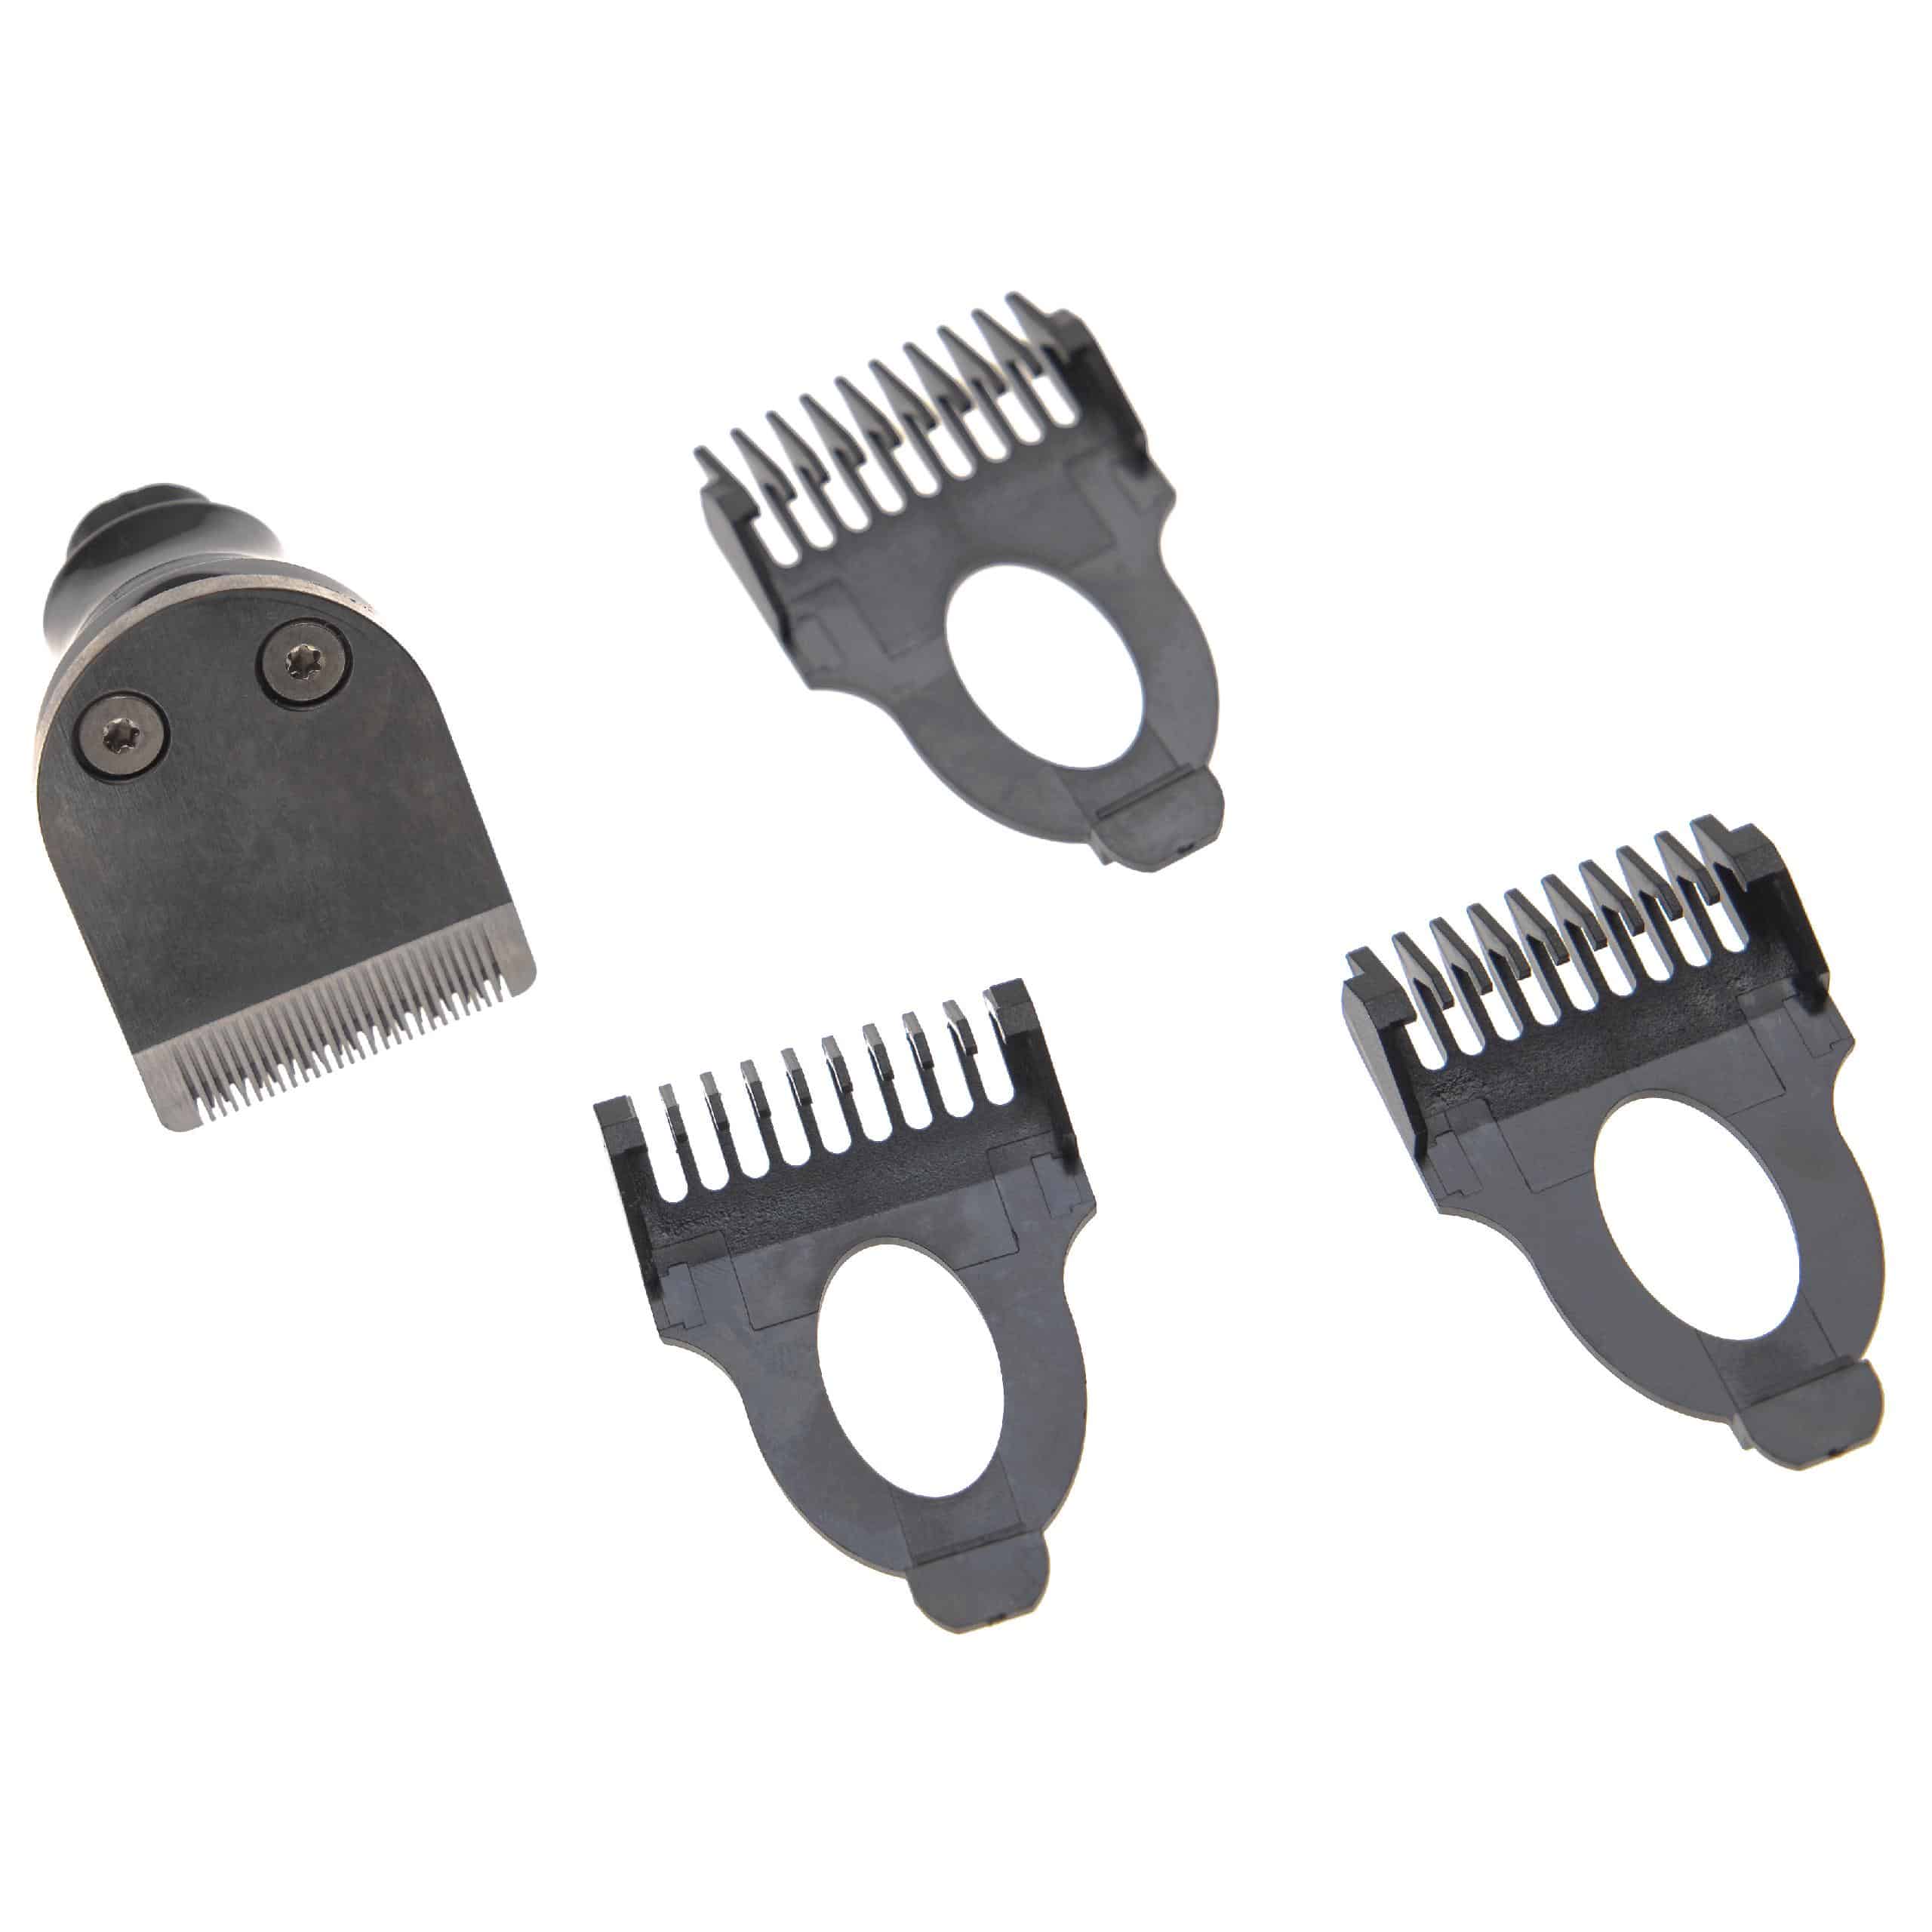 Set avec tête de rasage pour rasoir Philips Arcitec et autres - Kit 4 pcs avec sabot 3mm / 5mm / 7mm